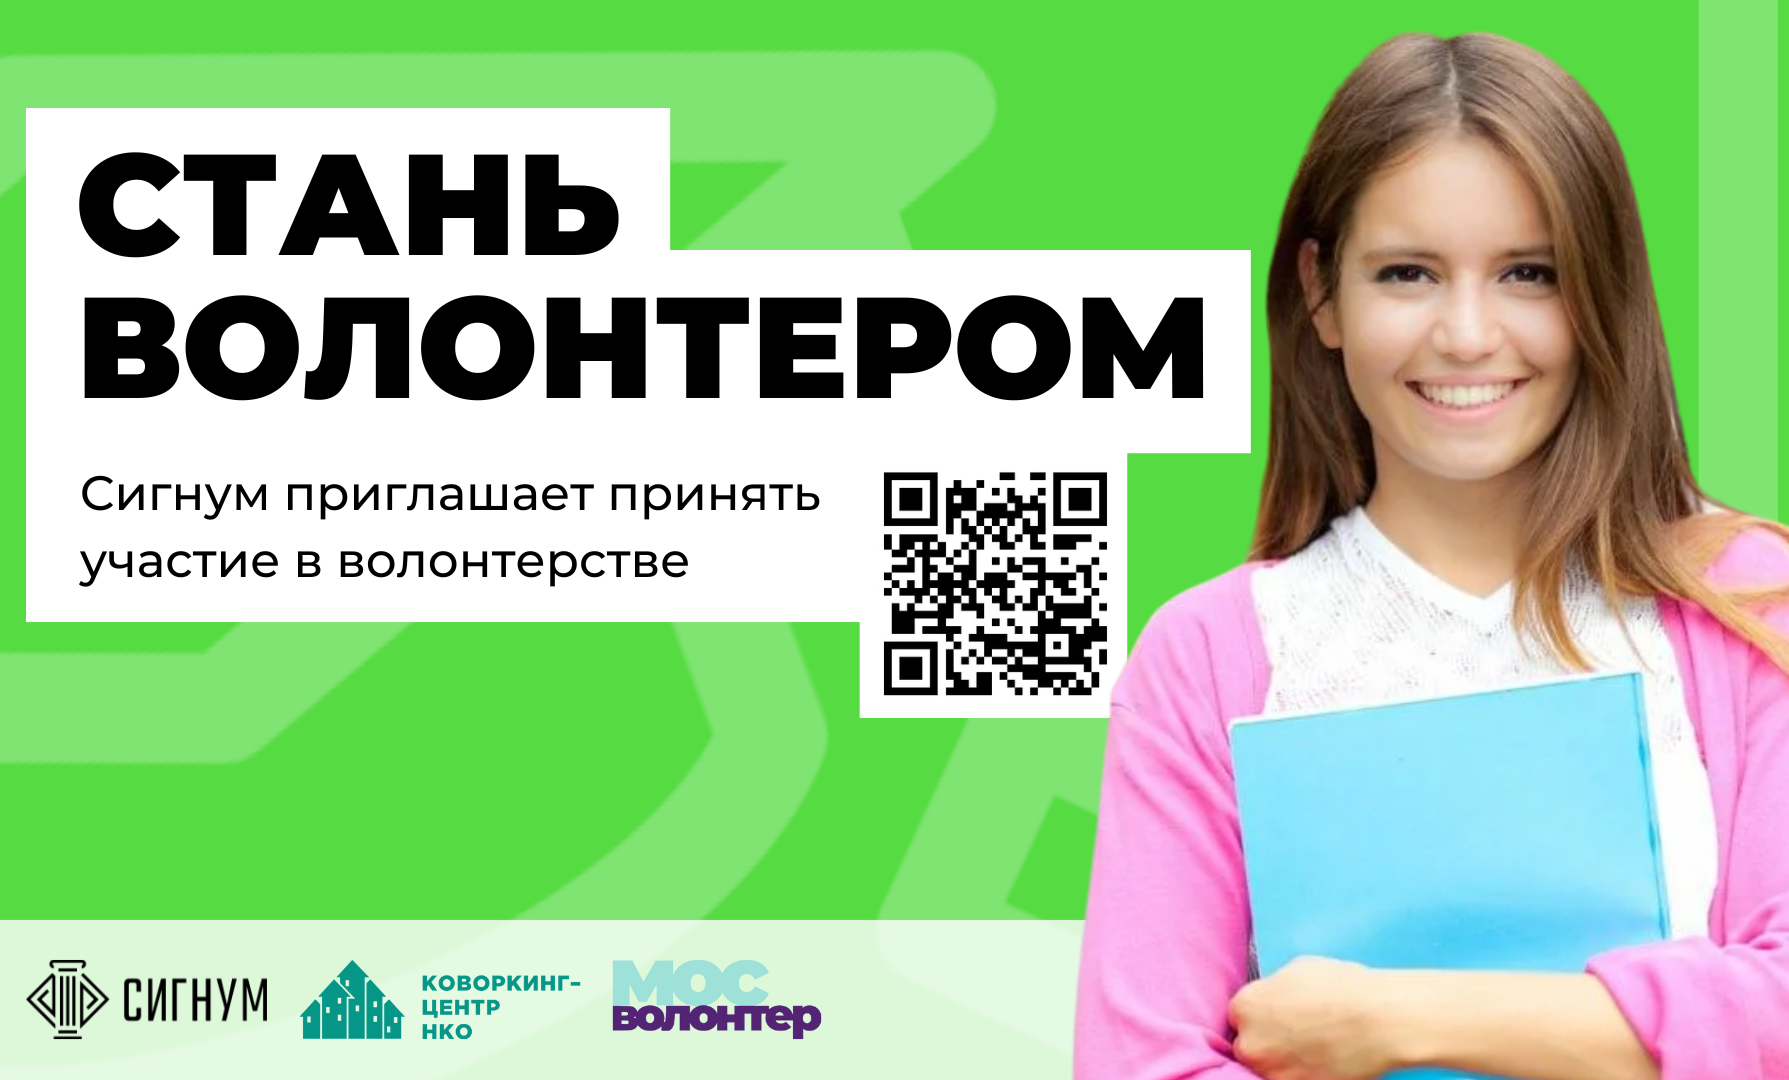 Всероссийский гуманитарный лекторий «СИГНУМ» приглашает желающих принять участие в волонтерской программе